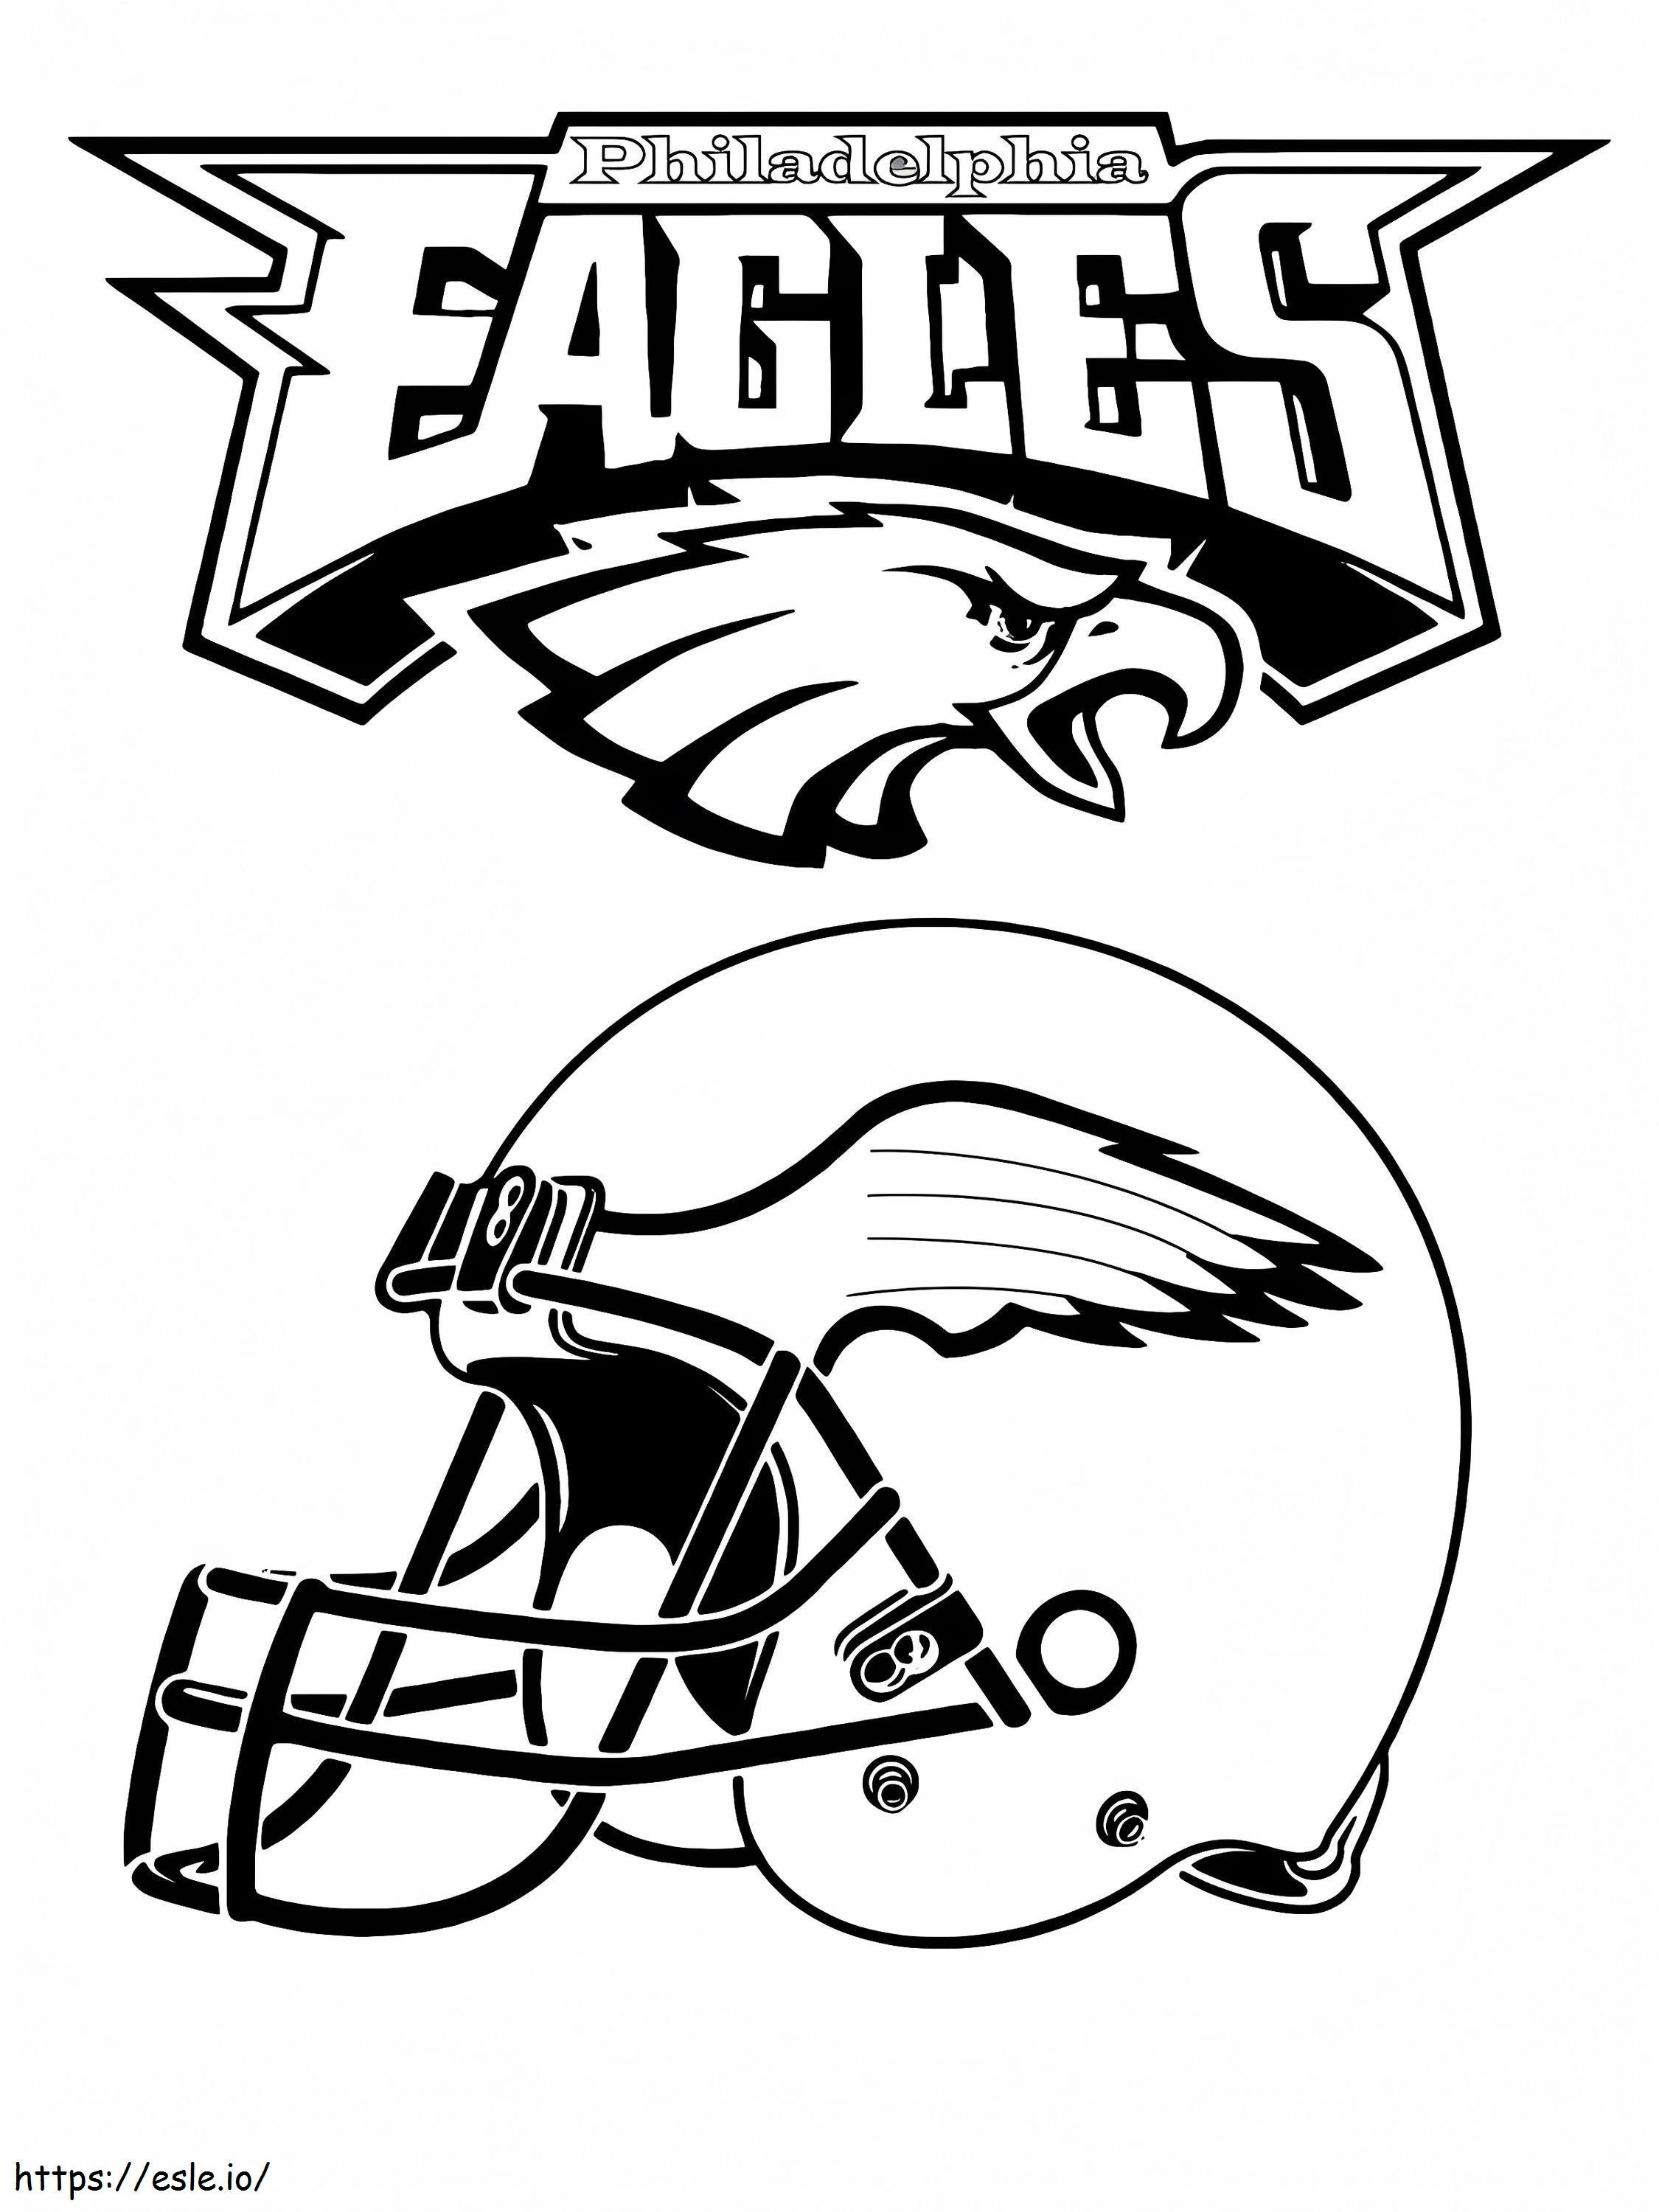 Helm der Philadelphia Eagles ausmalbilder